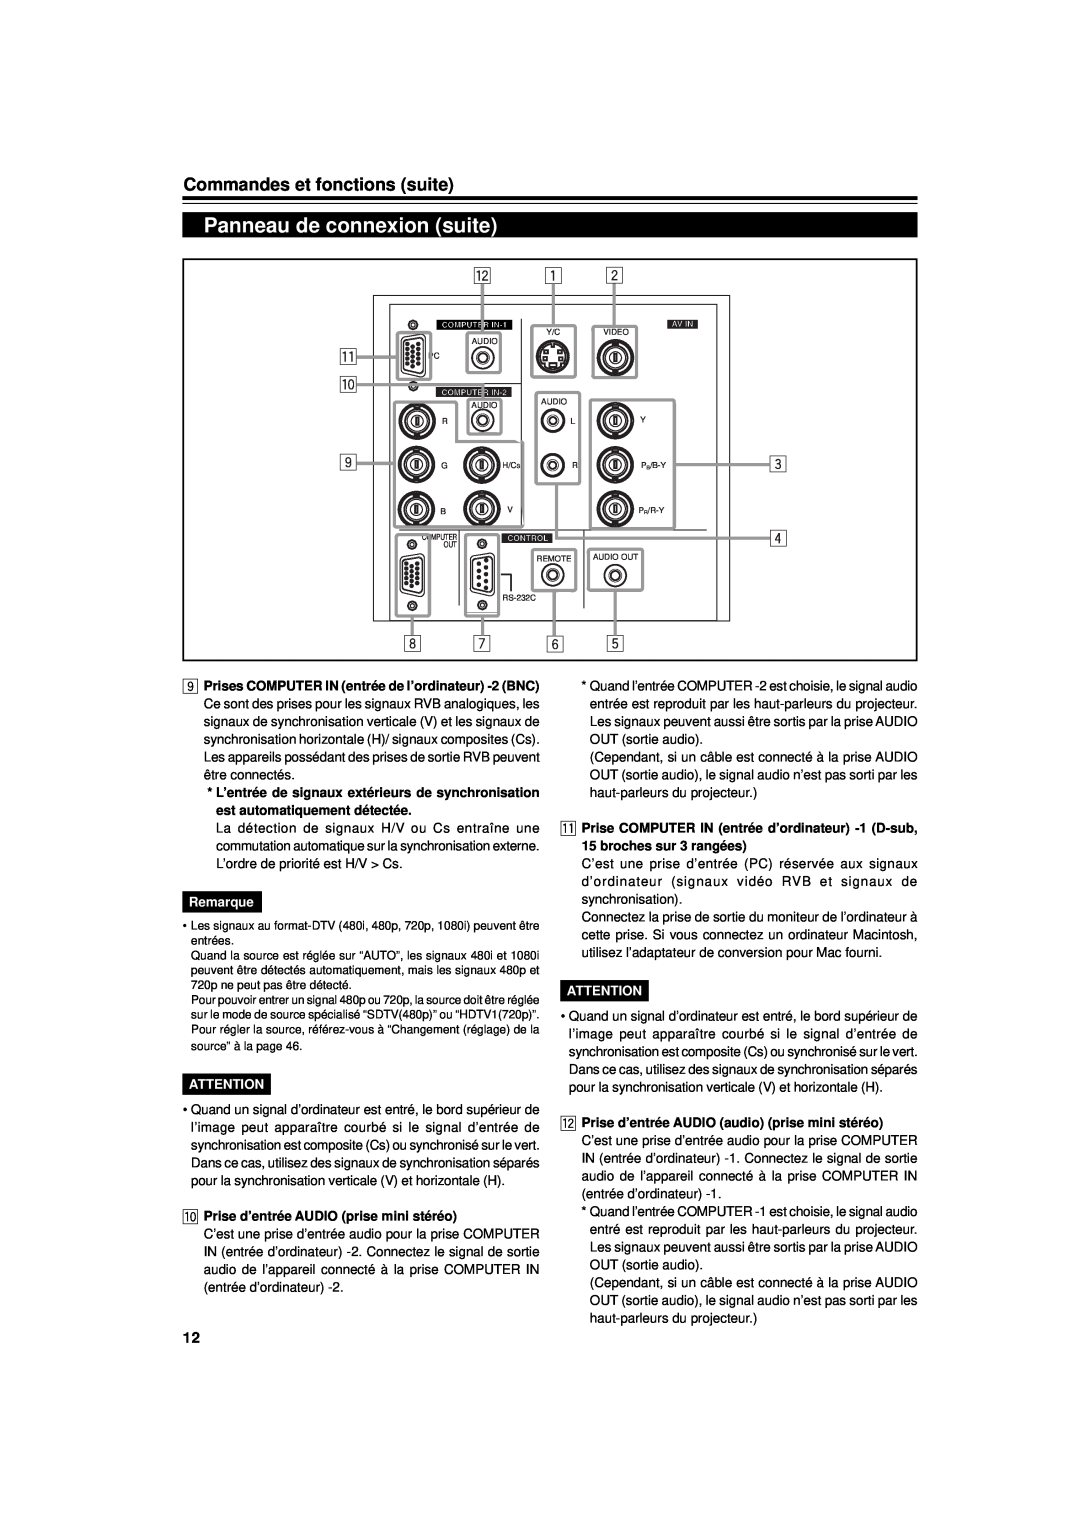 JVC DLA-G11U Panneau de connexion suite, Commandes et fonctions suite, Remarque, p Prise d’entrée AUDIO prise mini stéréo 